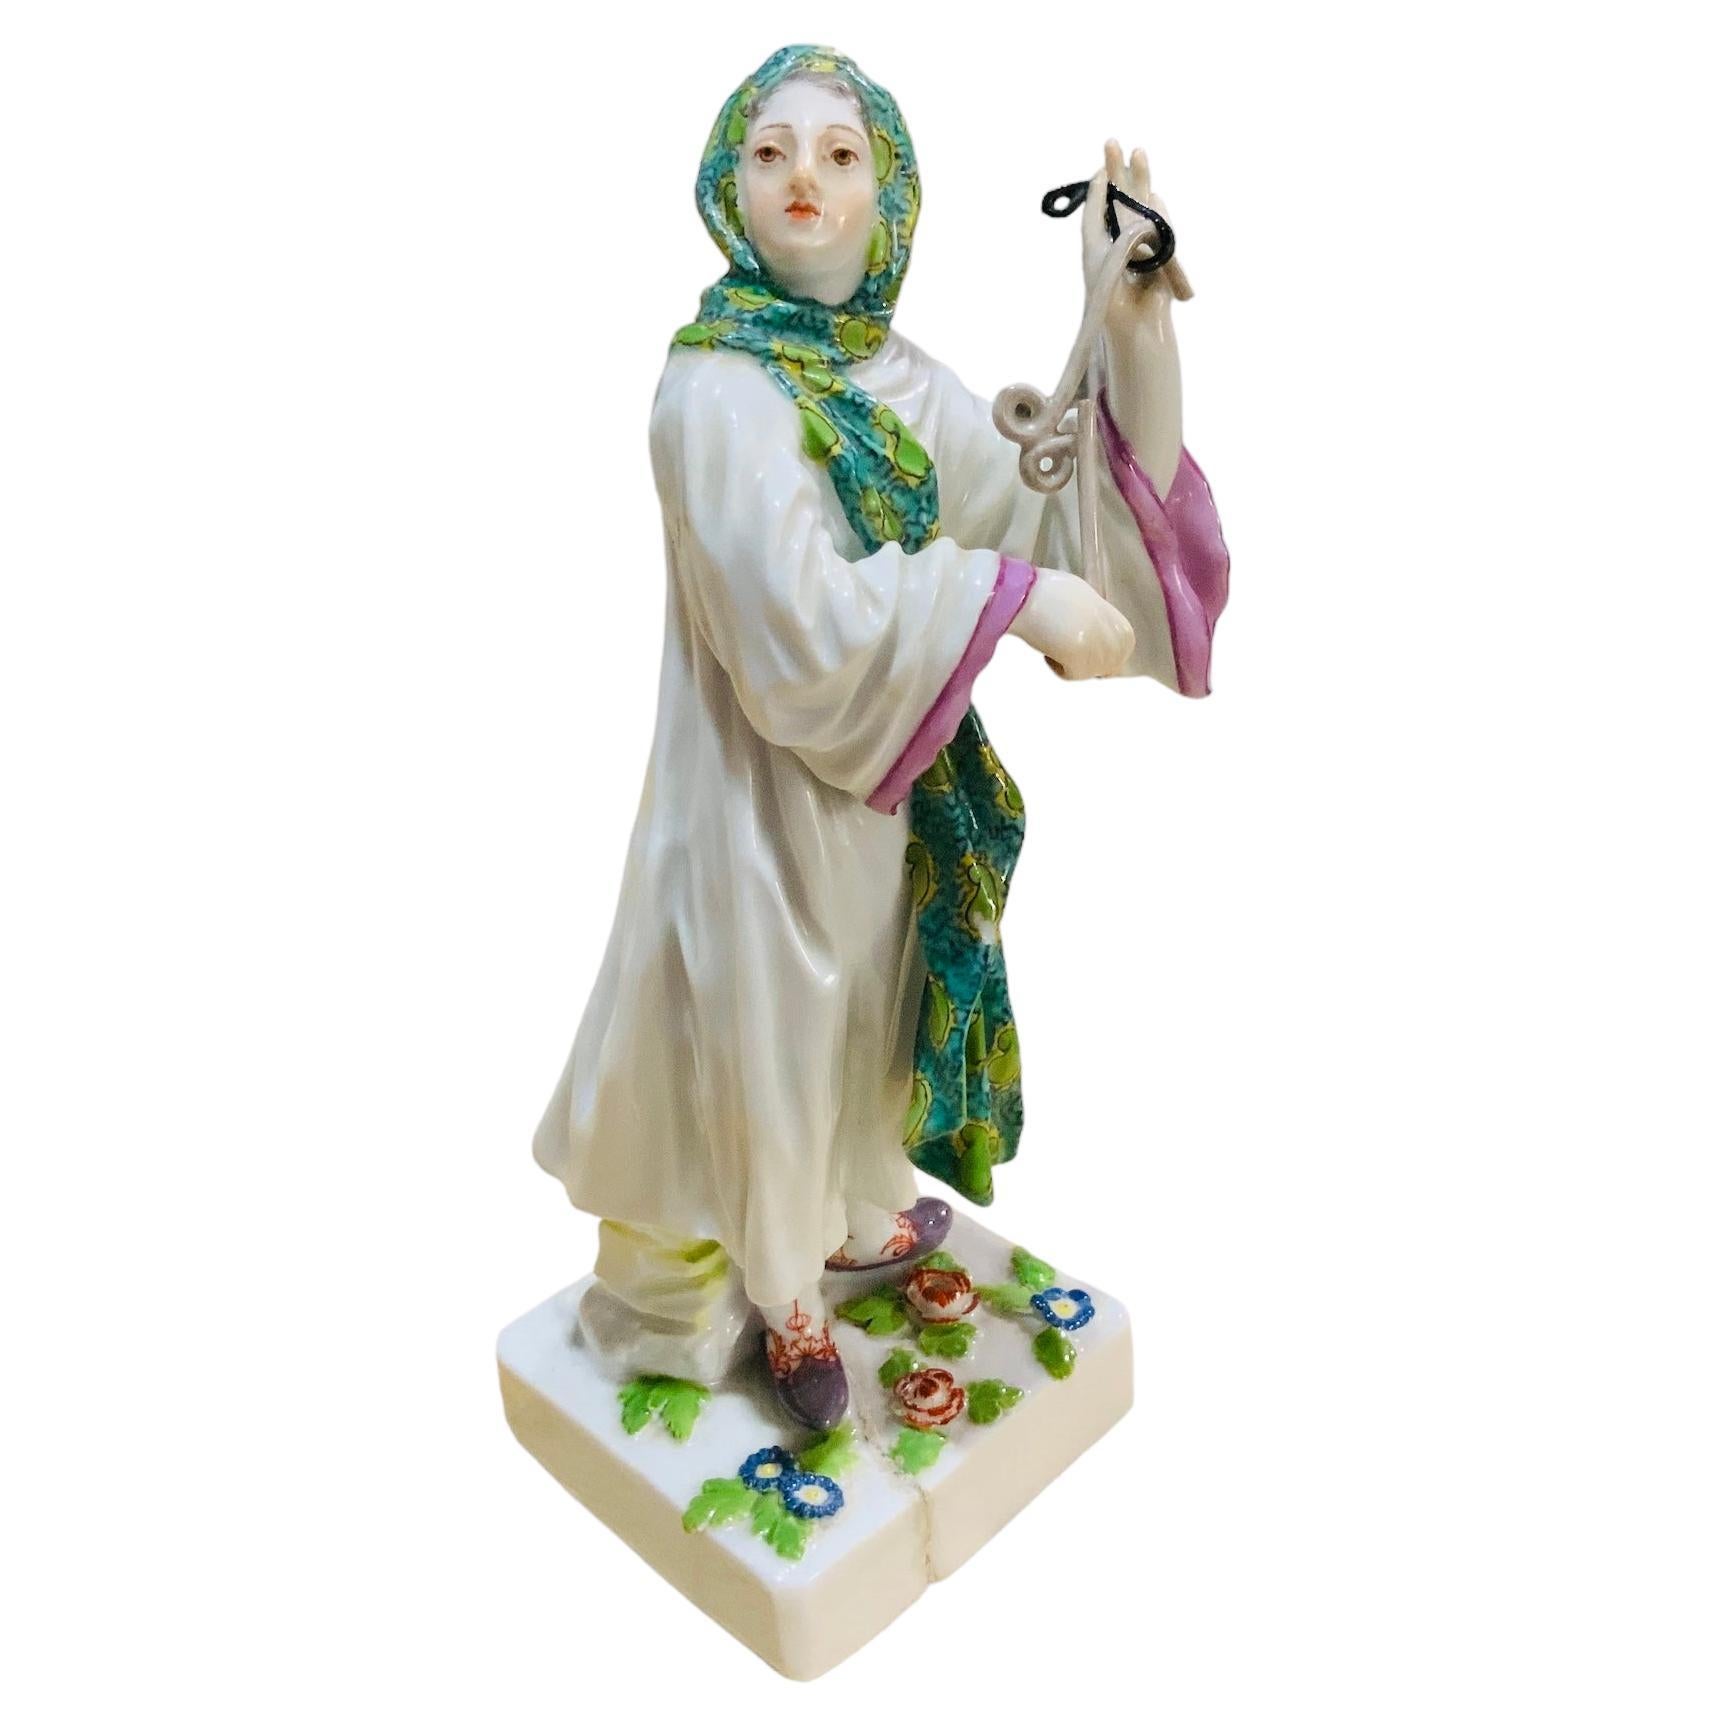 Meissener handbemalte Porzellanfigur von  Eine Dame aus dem Nahen Osten